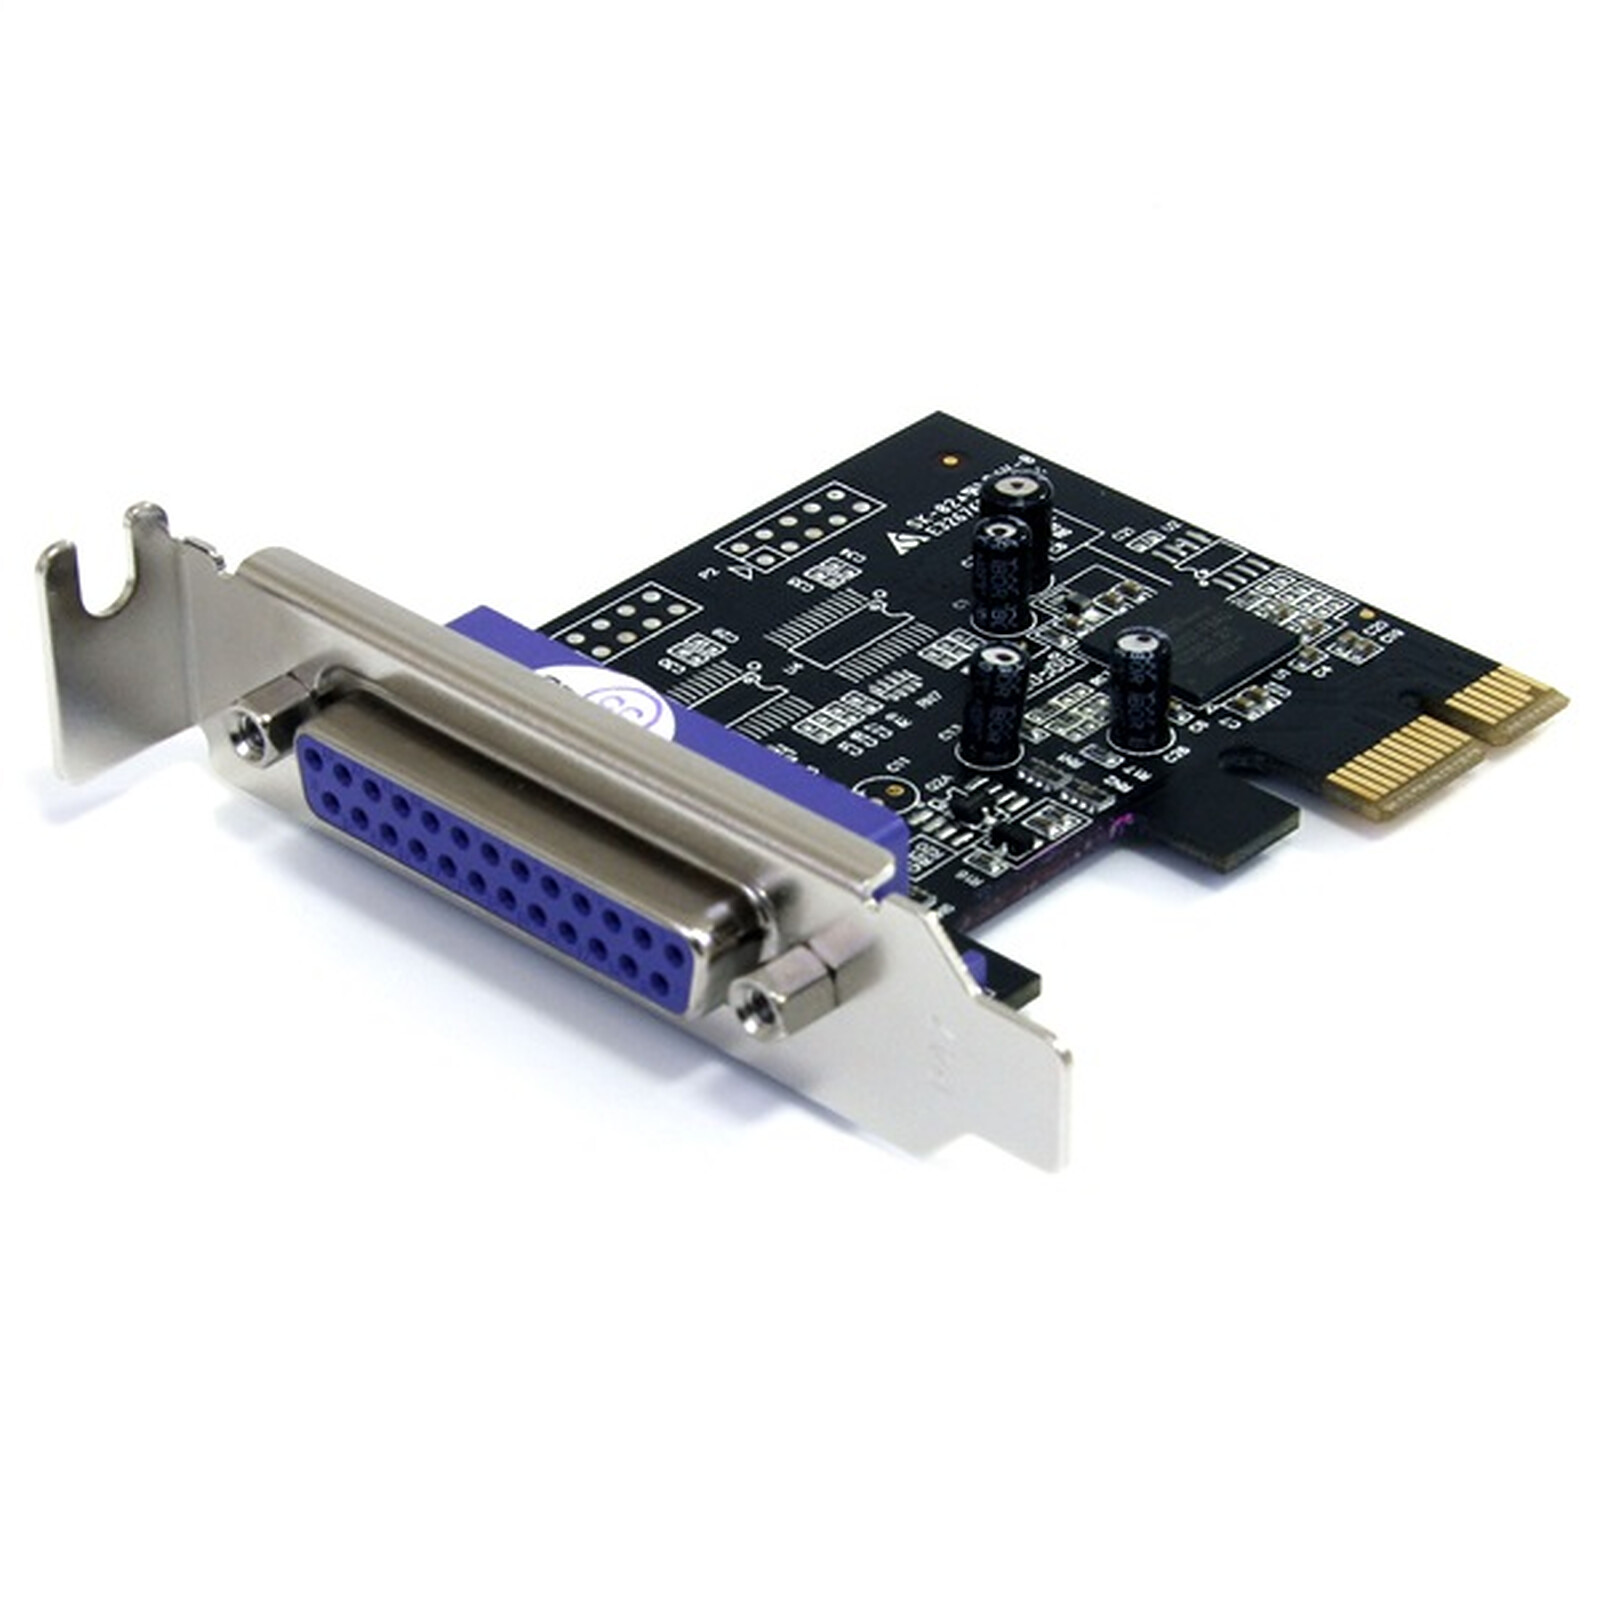 Kafuty Adaptateur de Serveur réseau Port série RS-232 COM à PCI-E Convertisseur dadaptateur de Carte PCI Express 2 Ports 2 Carte PCI-E à 2 Ports série RS-232